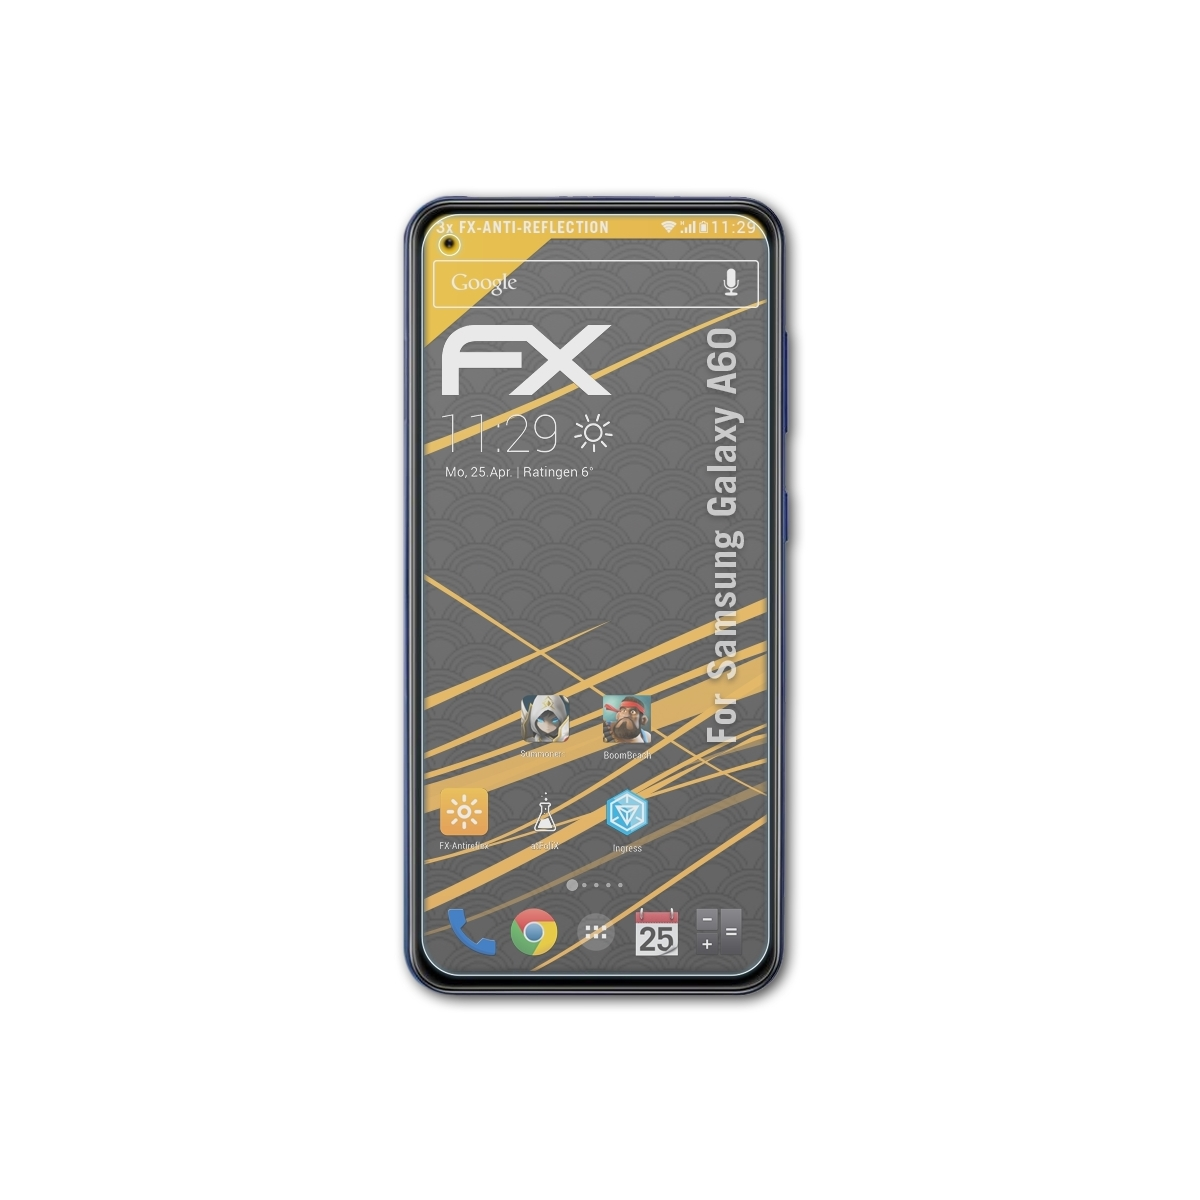 Displayschutz(für Galaxy ATFOLIX A60) Samsung 3x FX-Antireflex